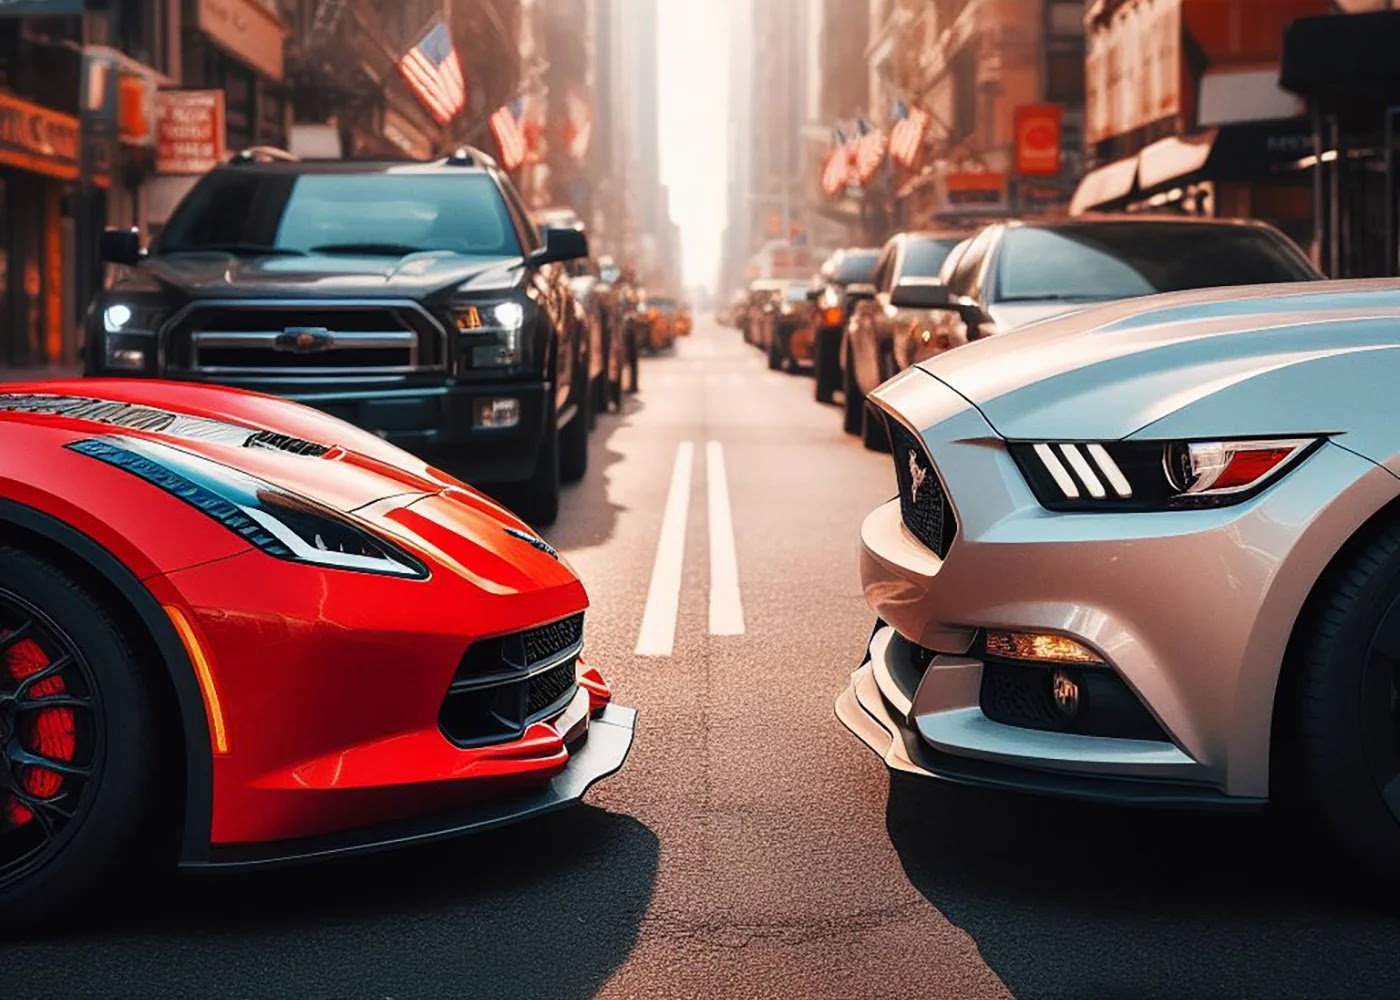 Corvette vs Mustang